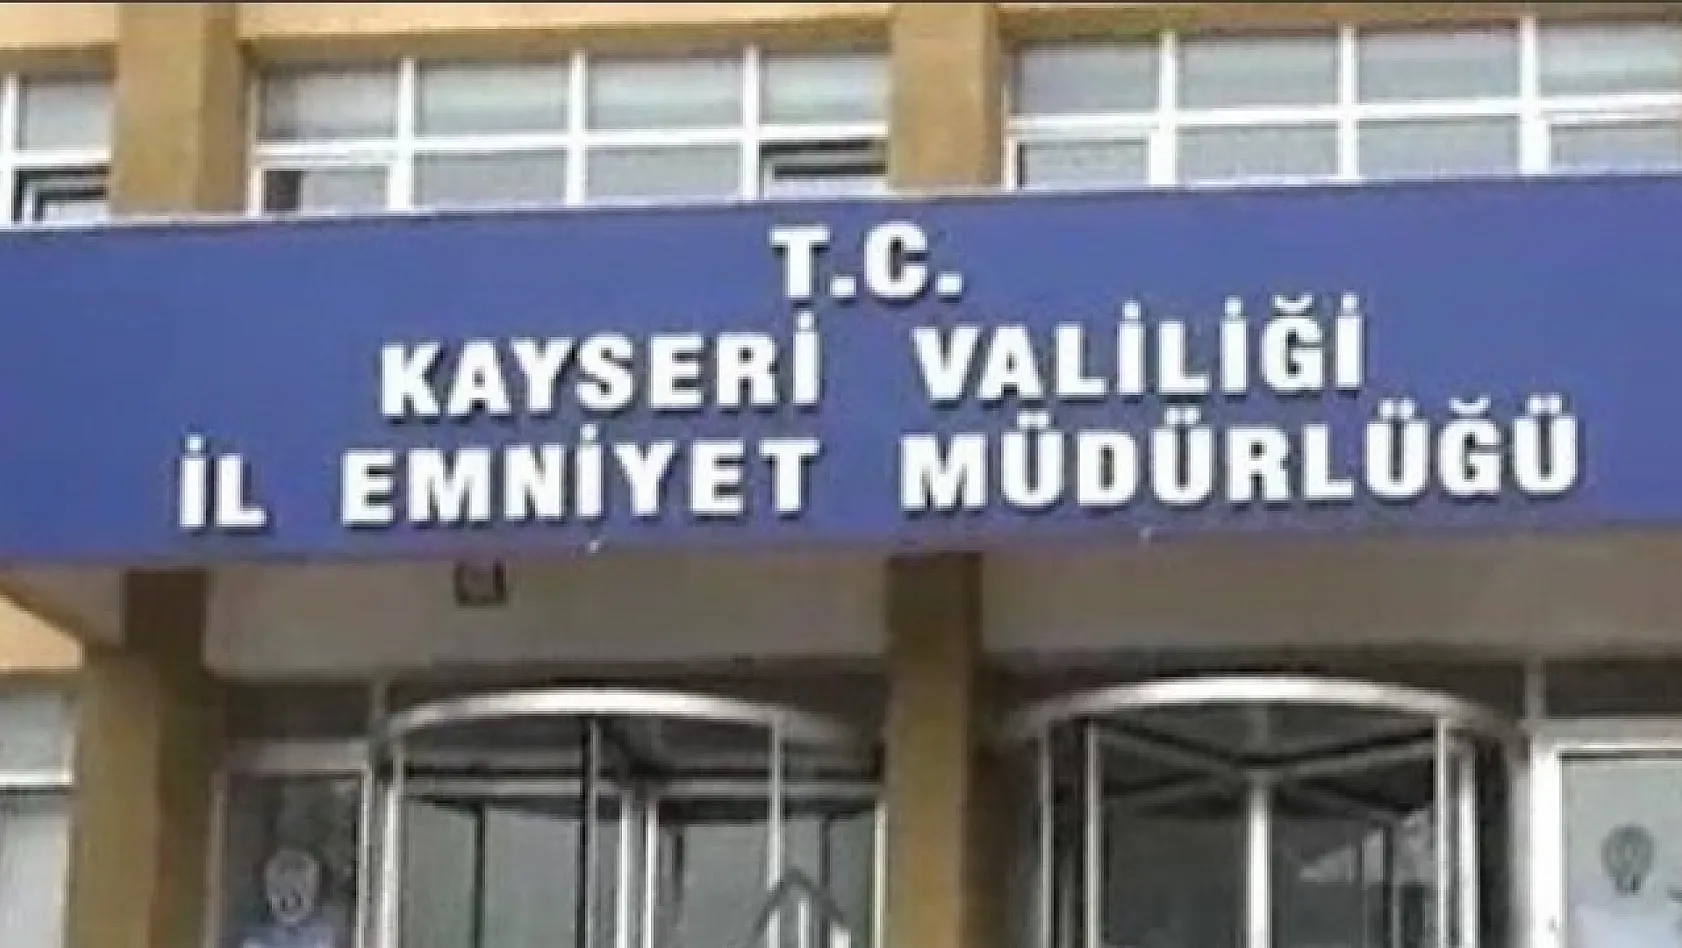 Kayseri'de kesinleşmiş hapis cezası olan 111 kişi yakalandı